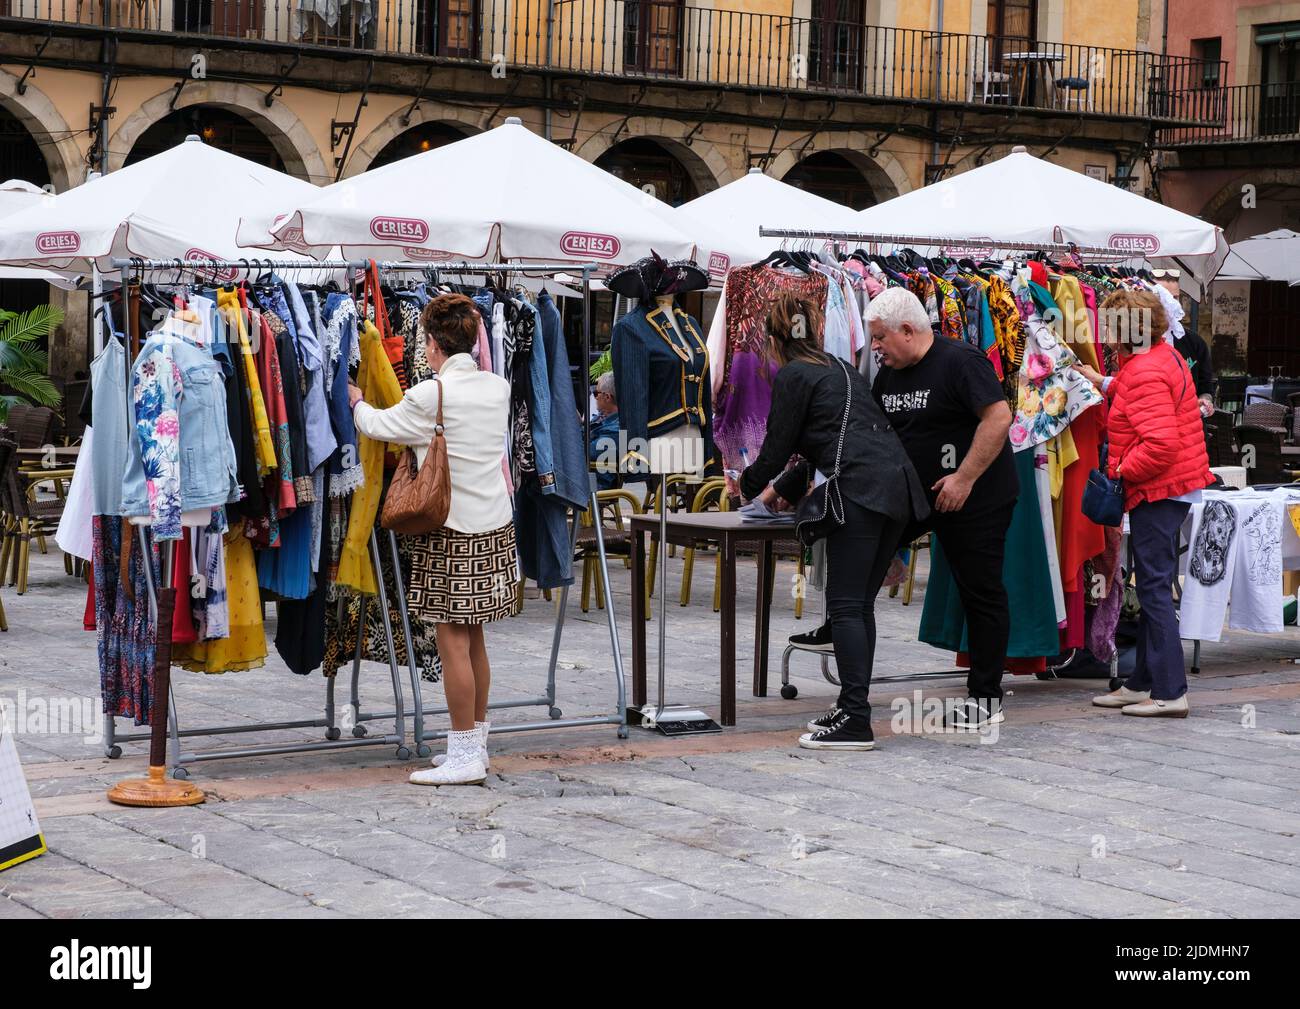 Spagna, Leon. Shopping per l'abbigliamento in Plaza Mayor. Foto Stock